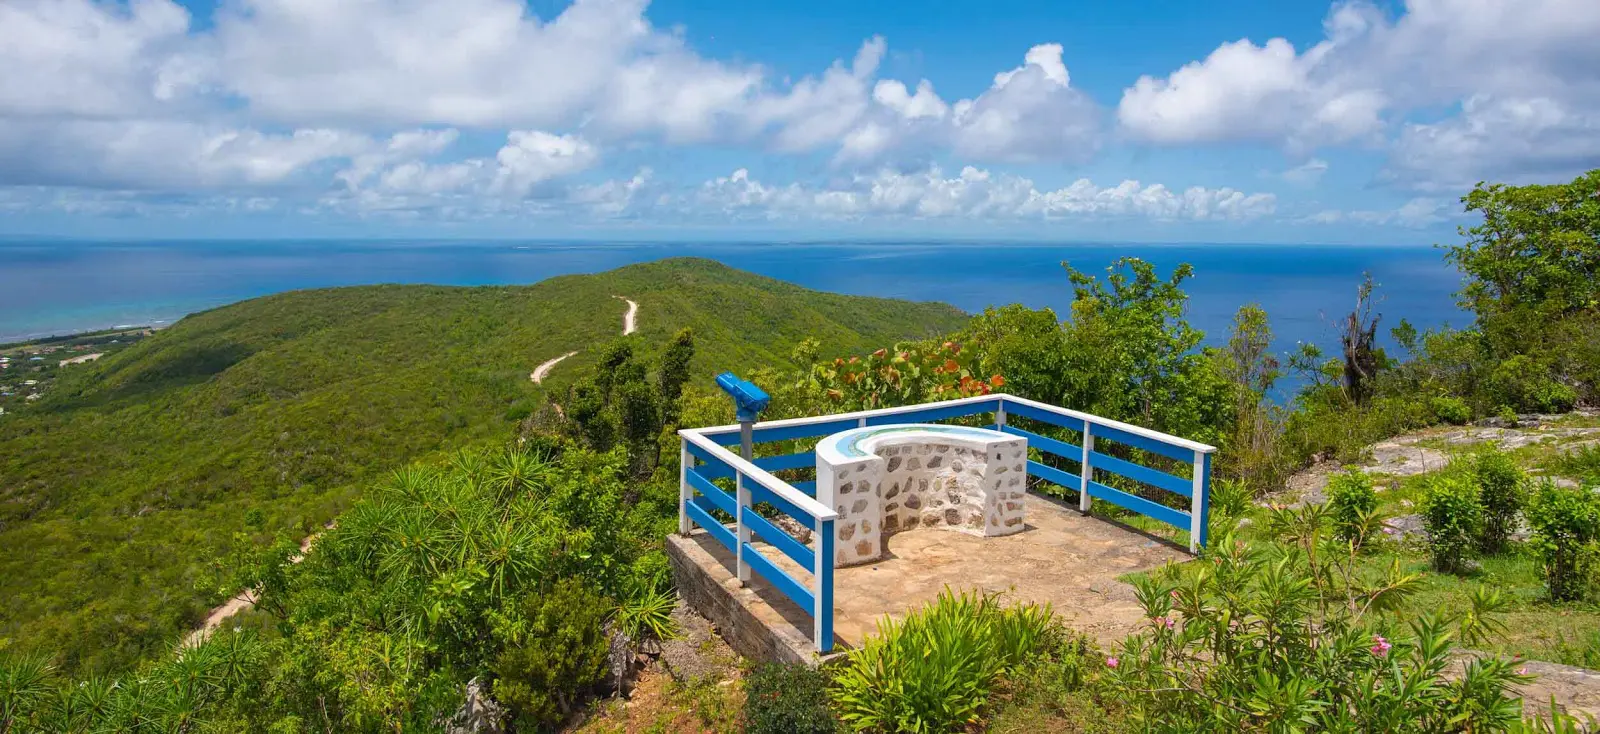 Visiter la Désirade, ce qu'il faut faire et voir , île de Guadeloupe, Antilles françaises